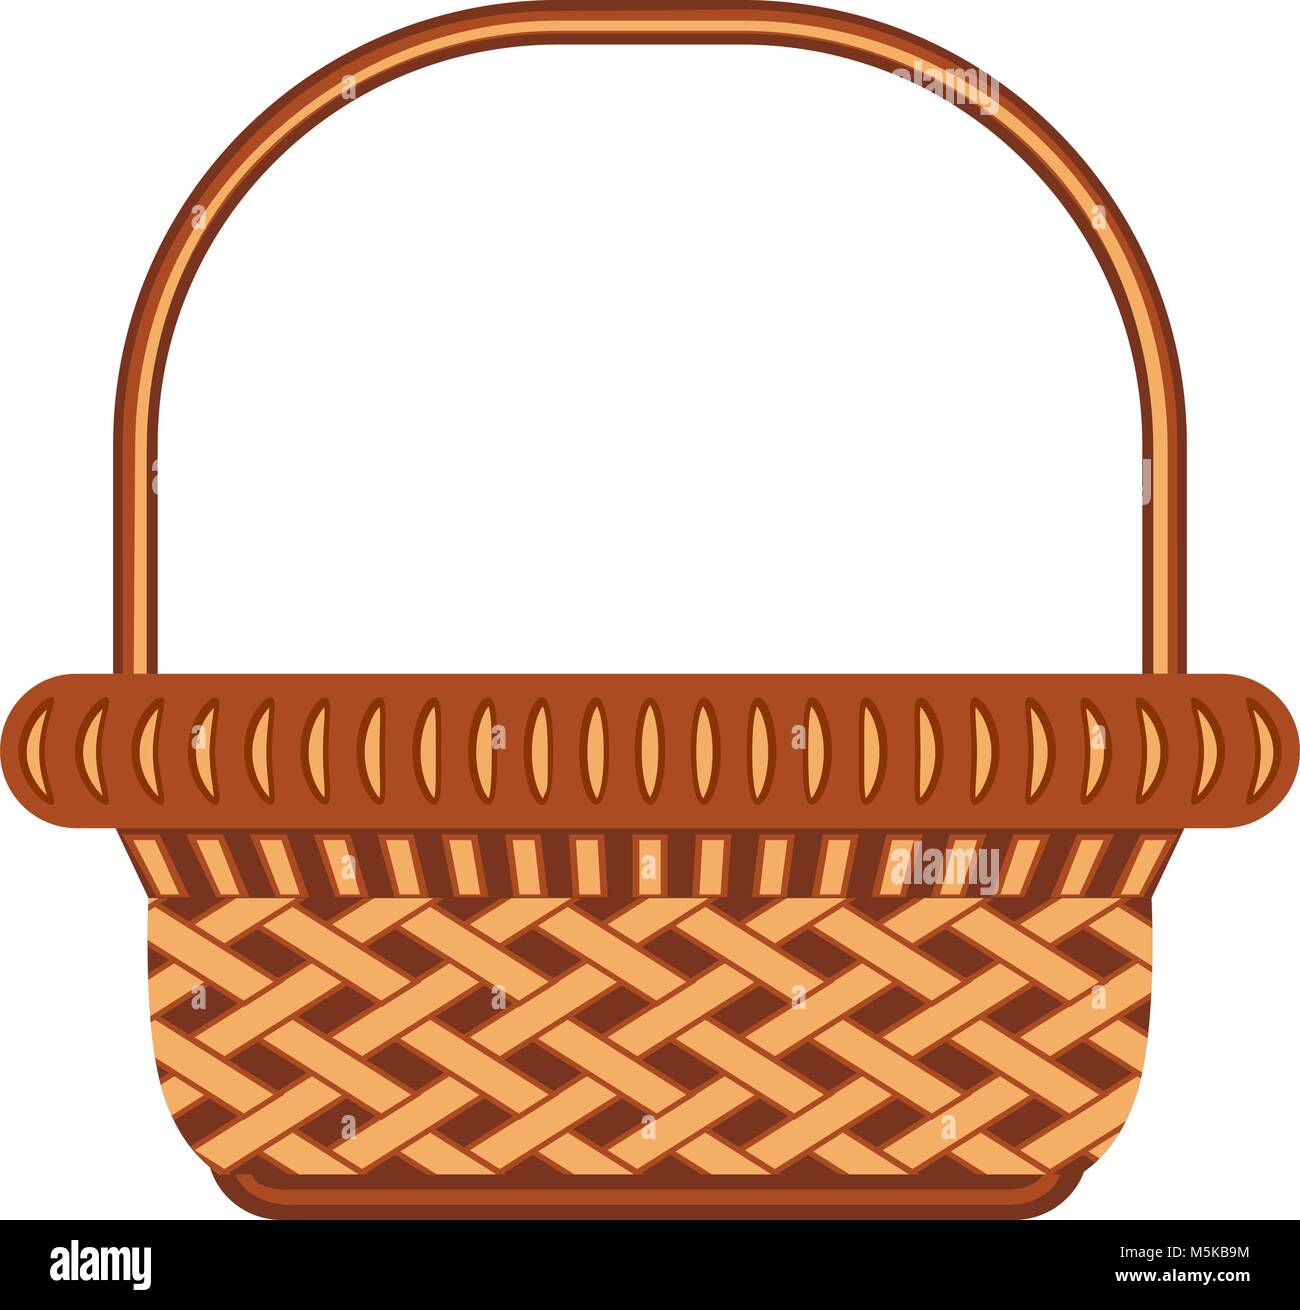 Cartoon wicker basket shopping cart icon poster. Stock Vector